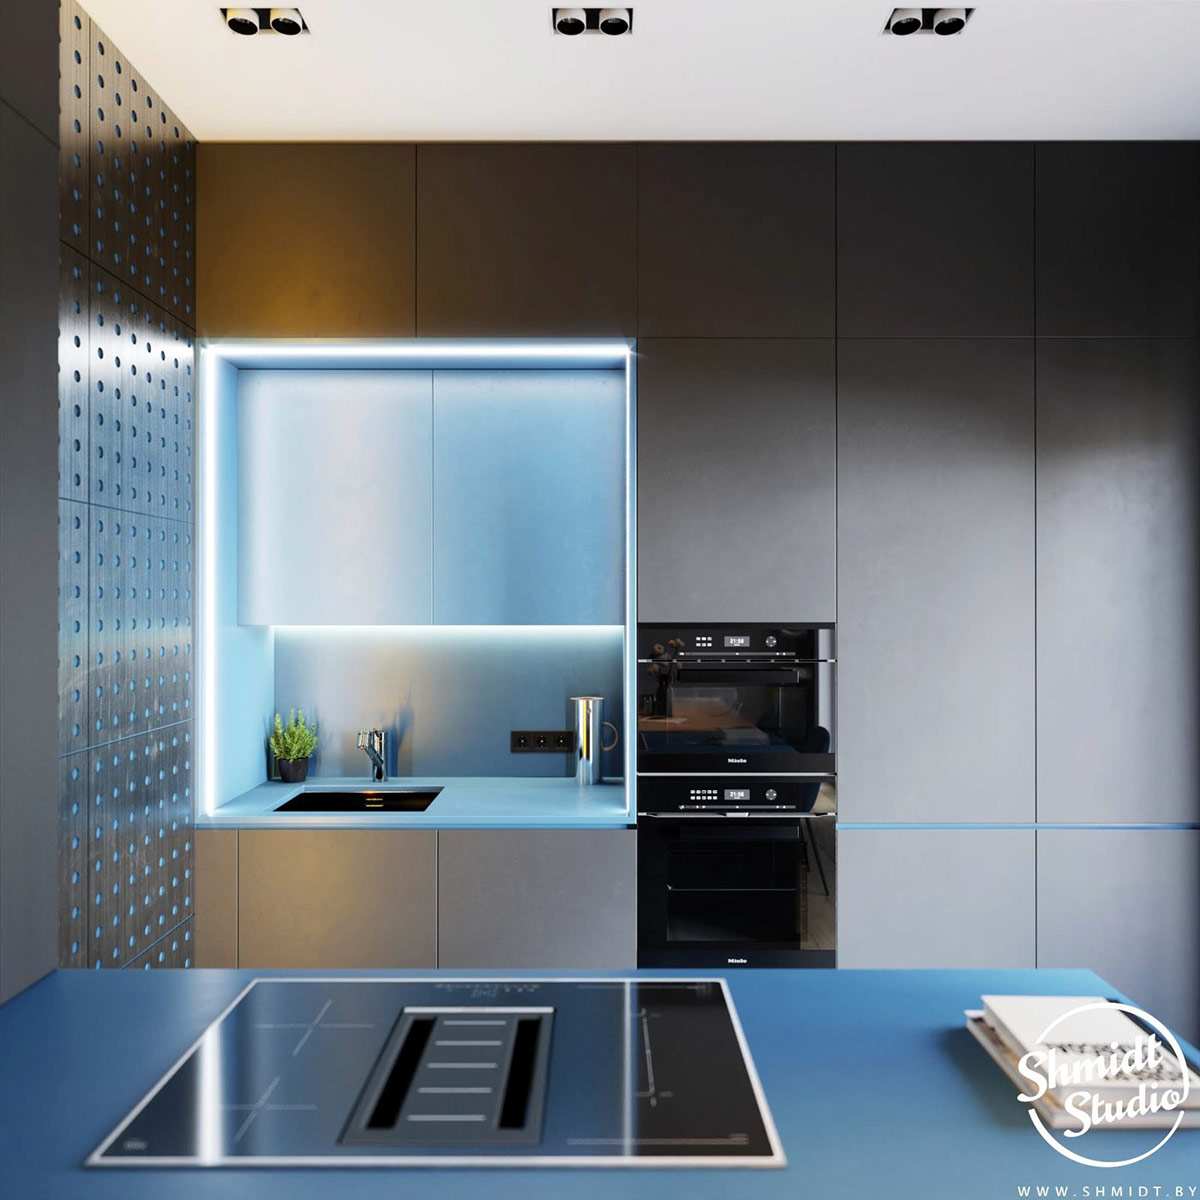 Phòng bếp lựa chọn gam màu xám và xanh lam nhạt chủ đạo, tuy chỉ chiếm một góc nhỏ trong phòng nhưng vẫn rất tiện nghi và đẹp mắt. Hệ thống đèn LED được sử dụng nhằm cung cấp ánh sáng cho khu vực nấu nướng vừa tạo hiệu ứng vô cùng bắt mắt.